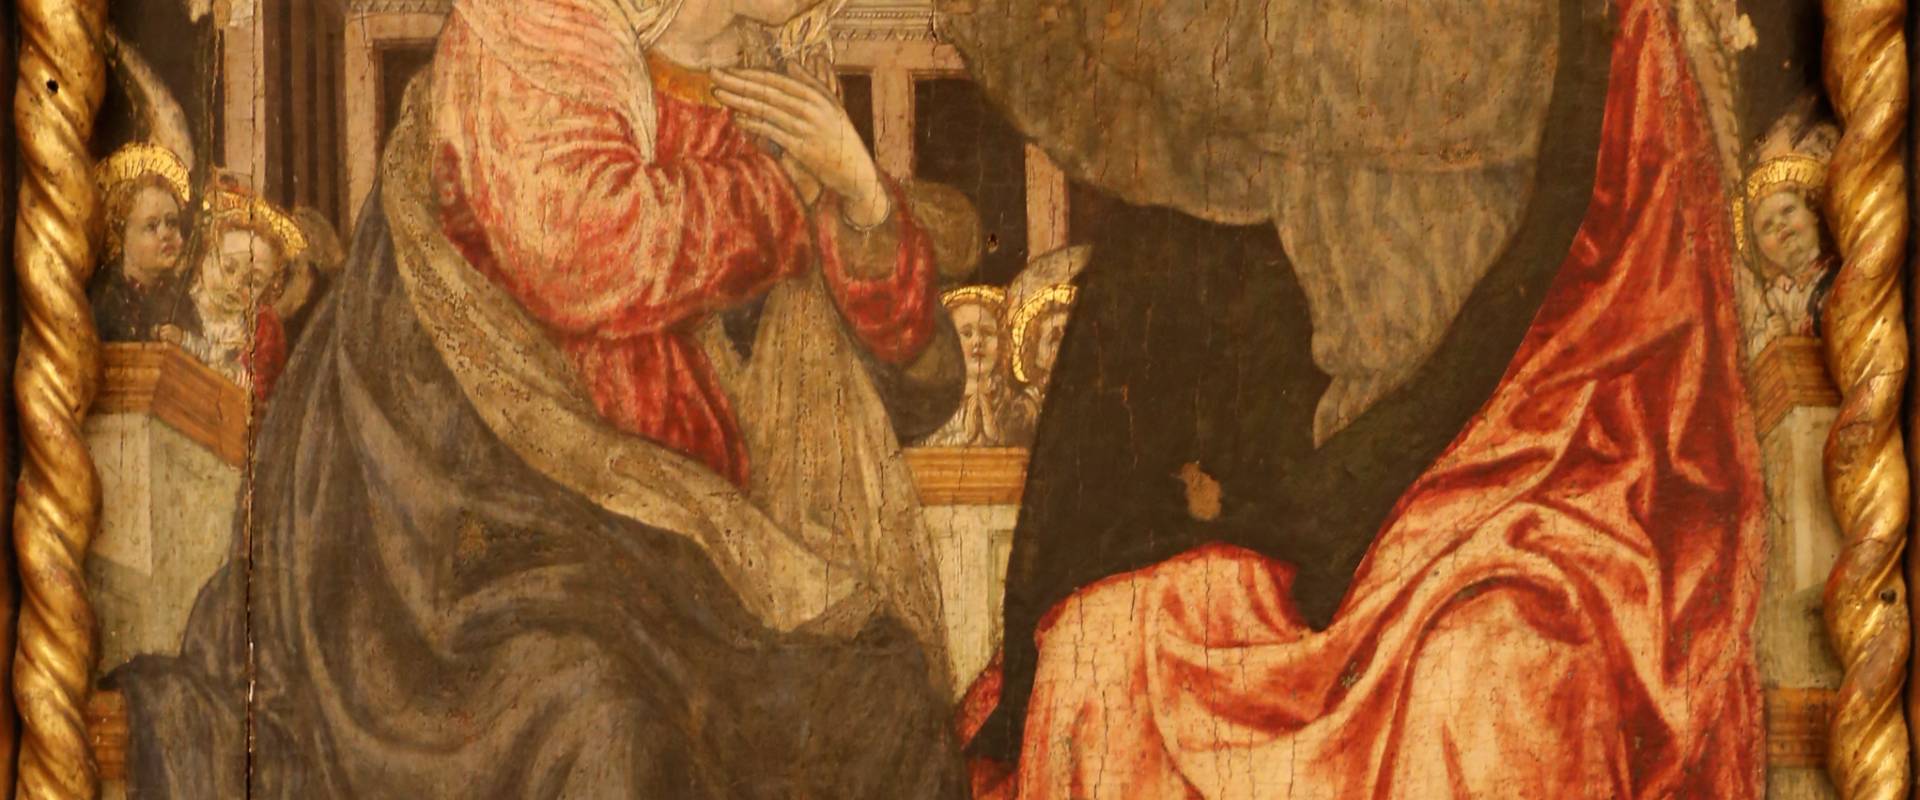 Angelo e bartolomeo degli erri, polittico dell'ospedale della morte, 1462-66, 07 incoronazione della vergine photo by Sailko